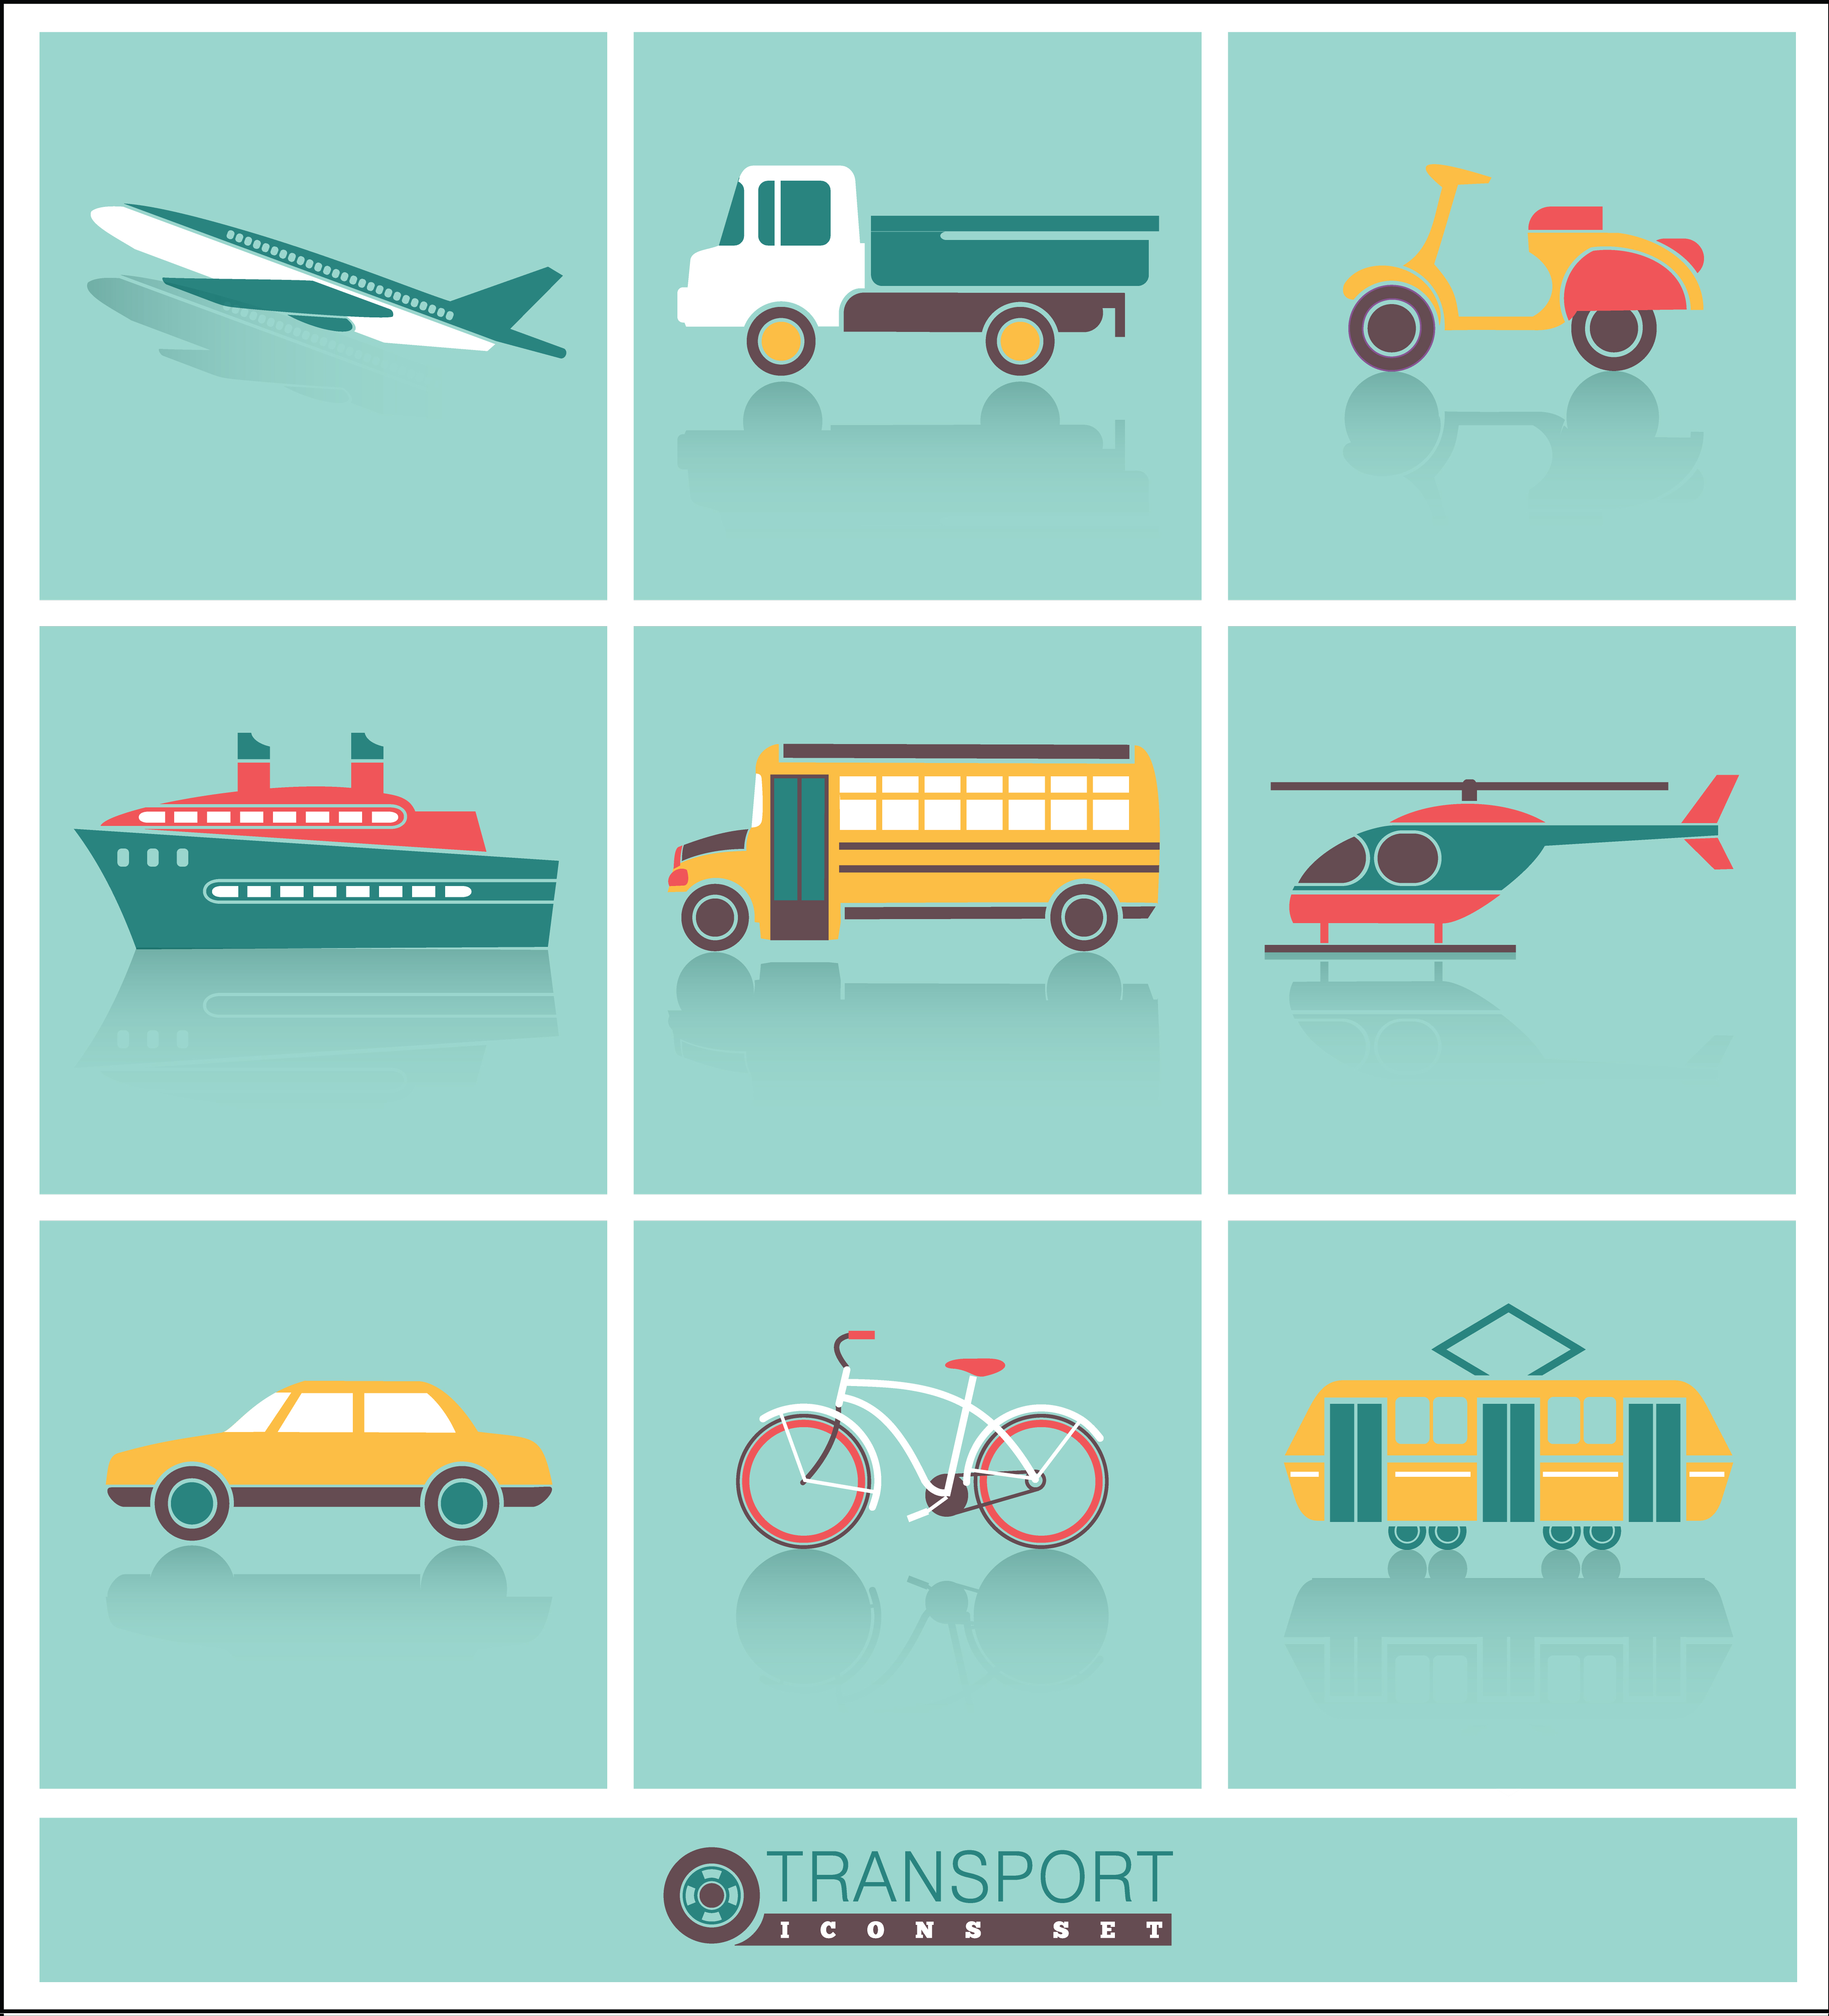 Transportation icons set Photoshop brush